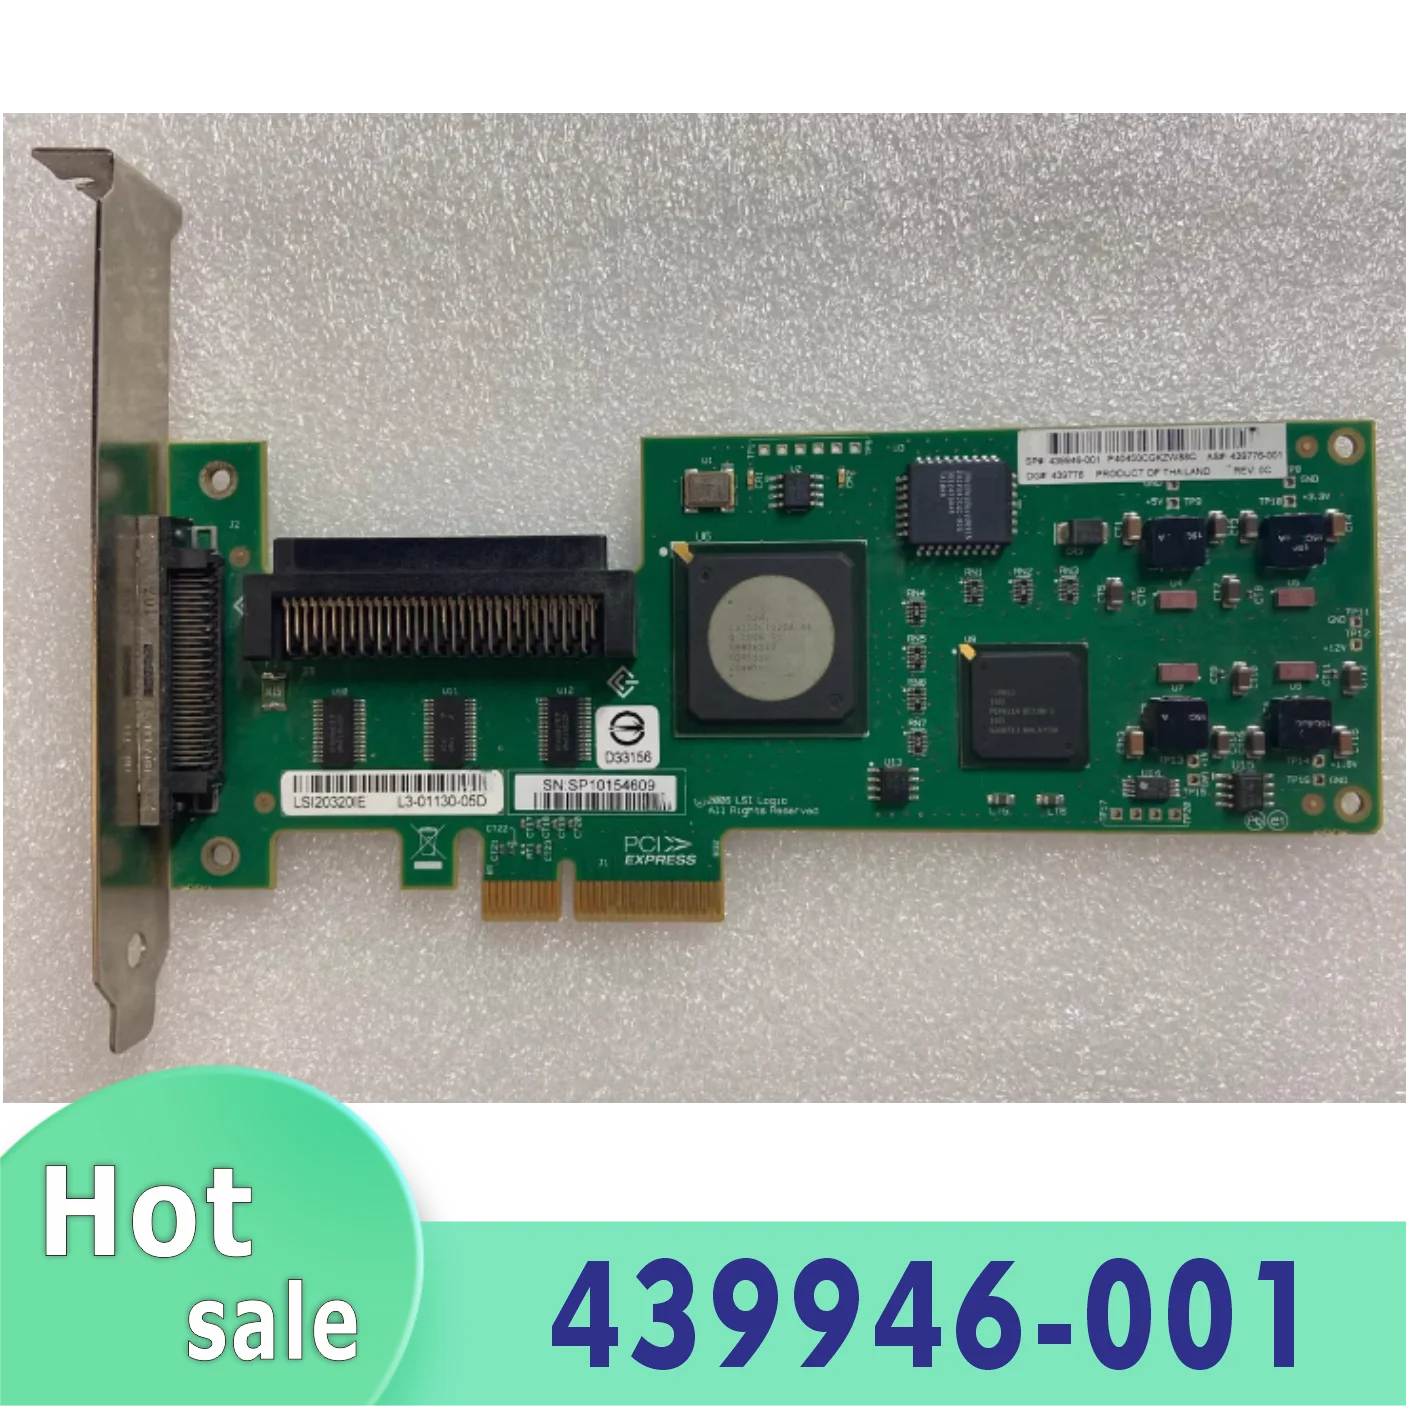 Логическая карта SCSI LVD/SE PCI Express x4 LSI20320IE 439946-001 100% тестирование